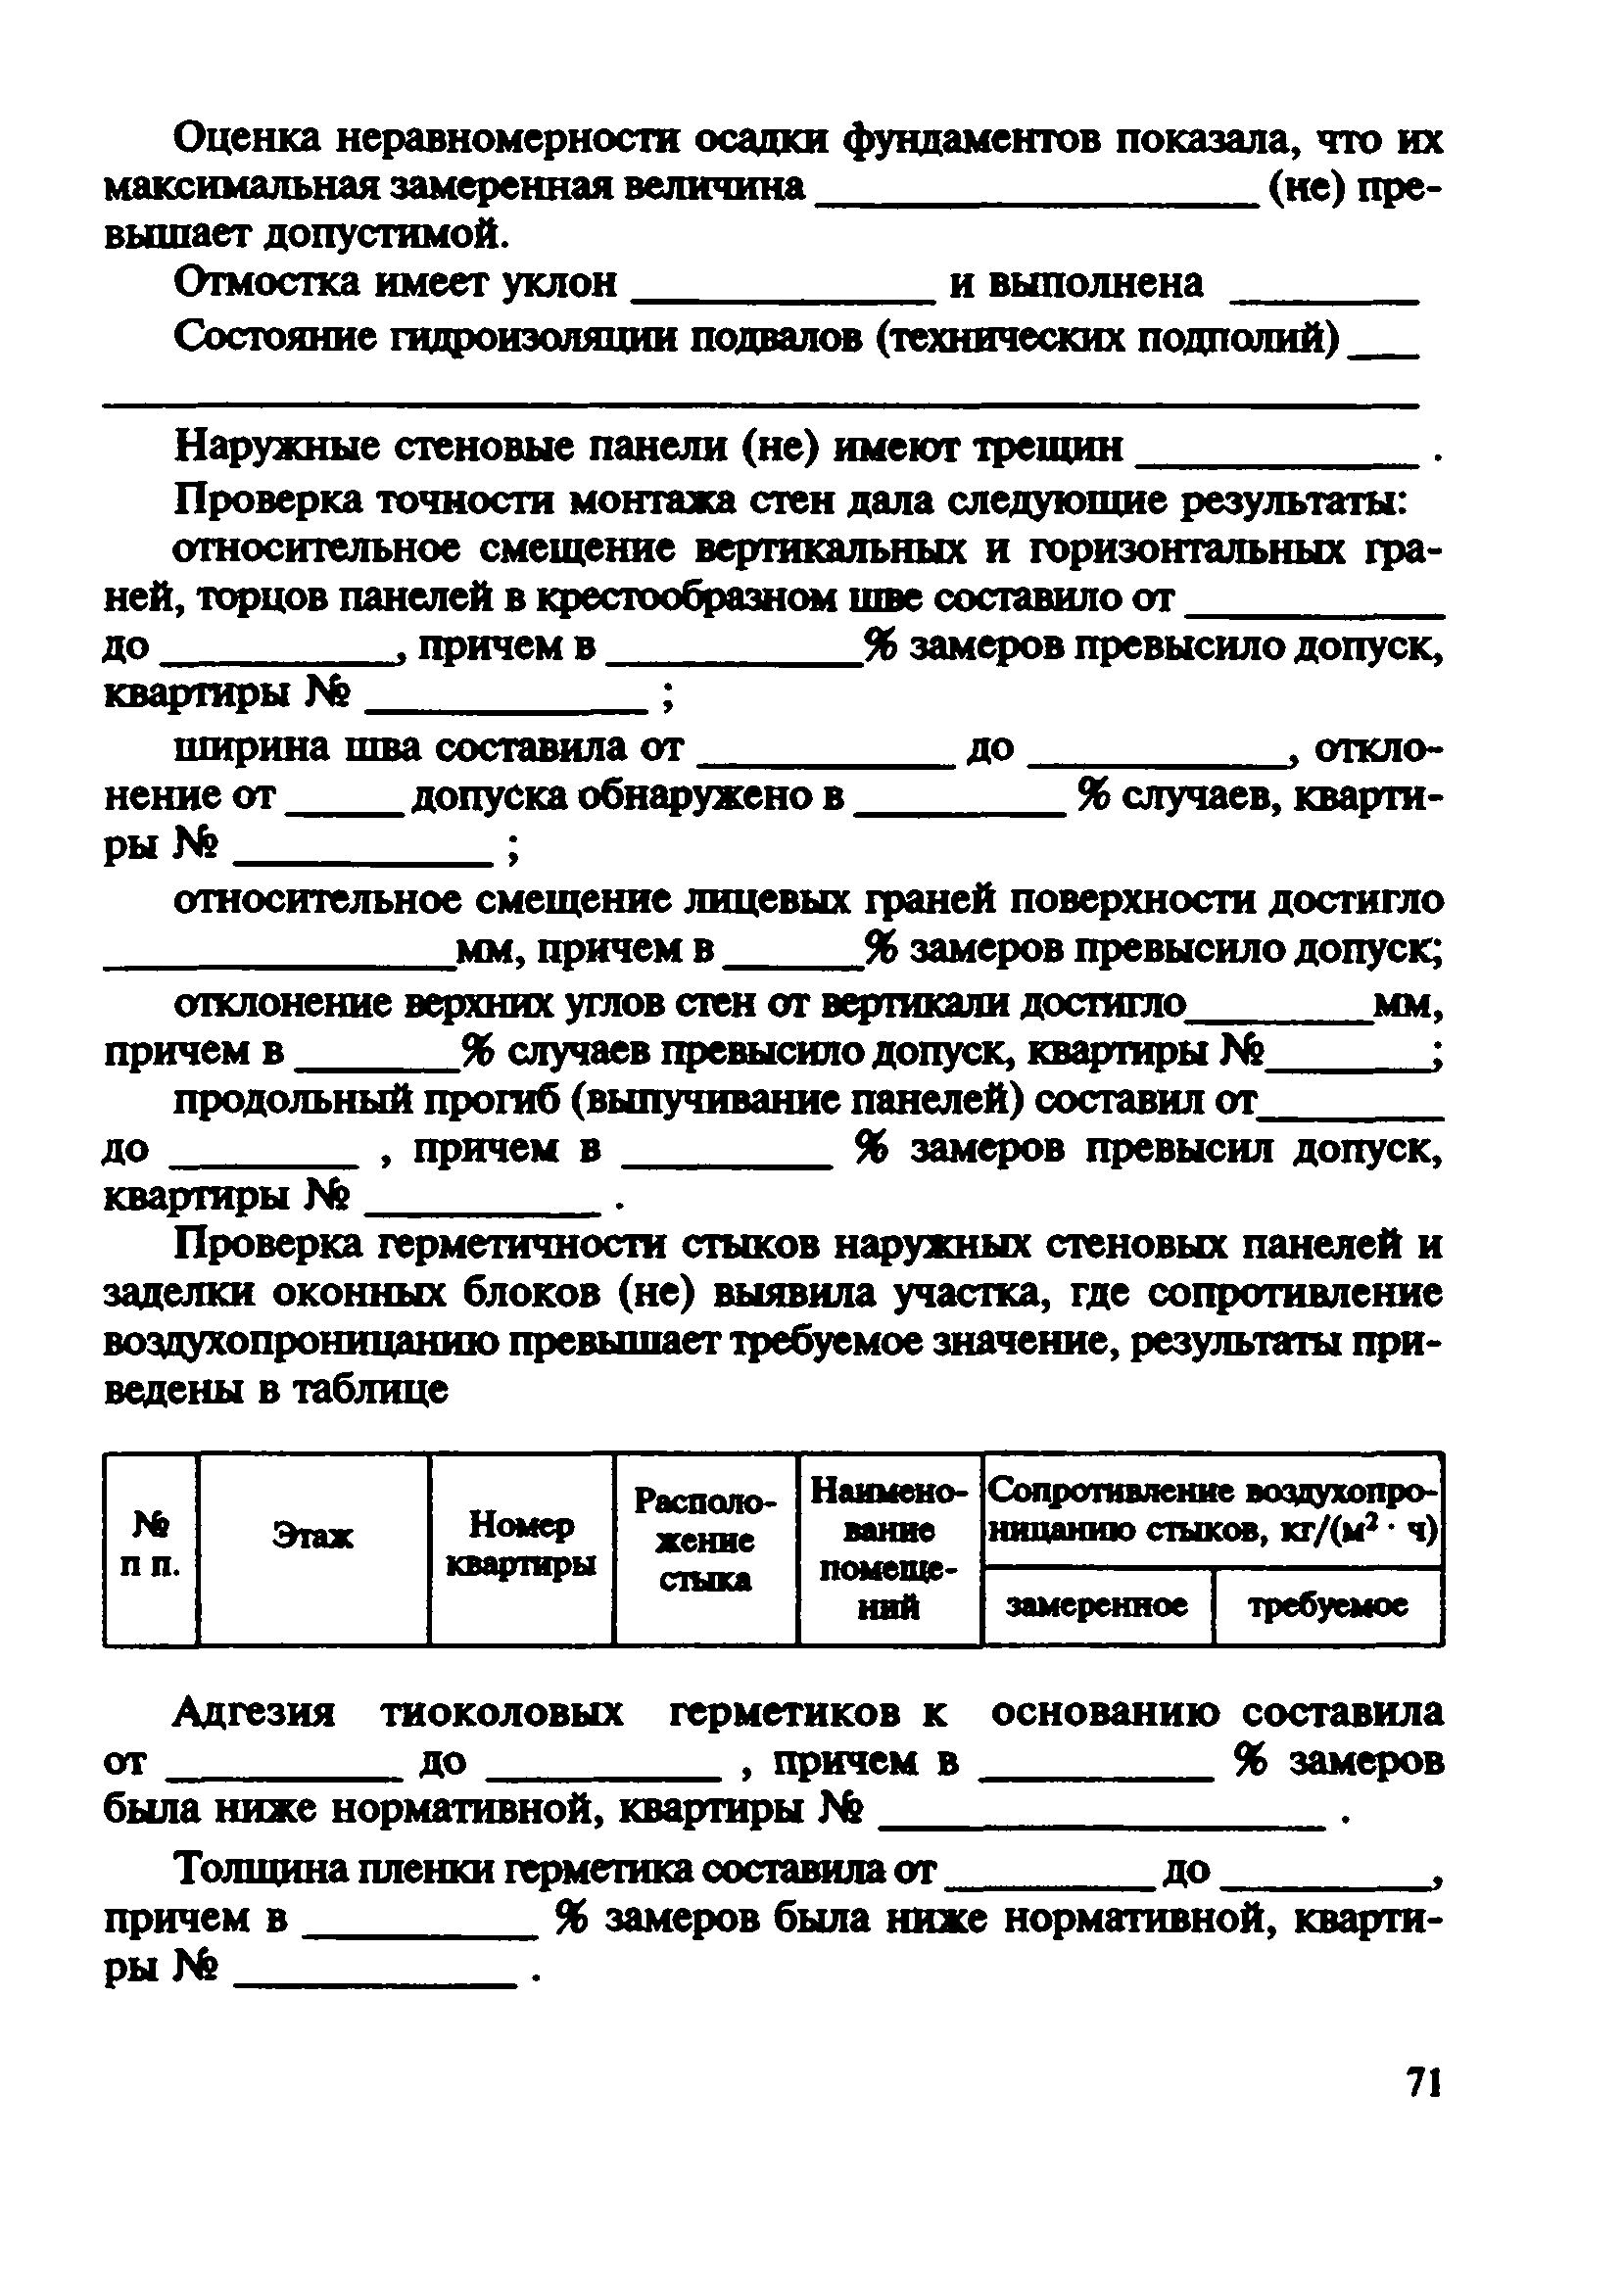 ВСН 57-88(р)